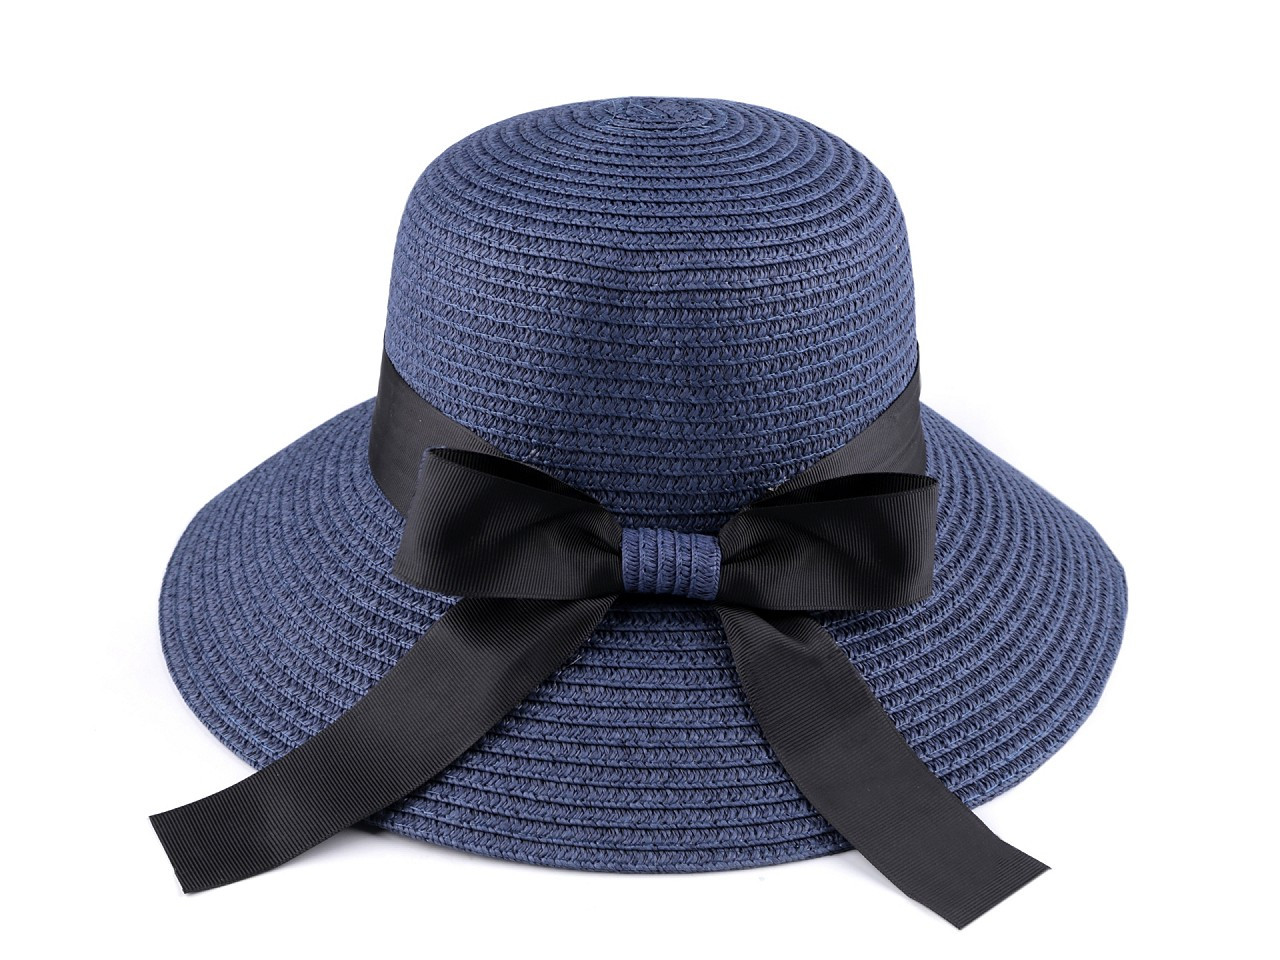 Dámský letní klobouk / slamák, barva 5 modrá tmavá